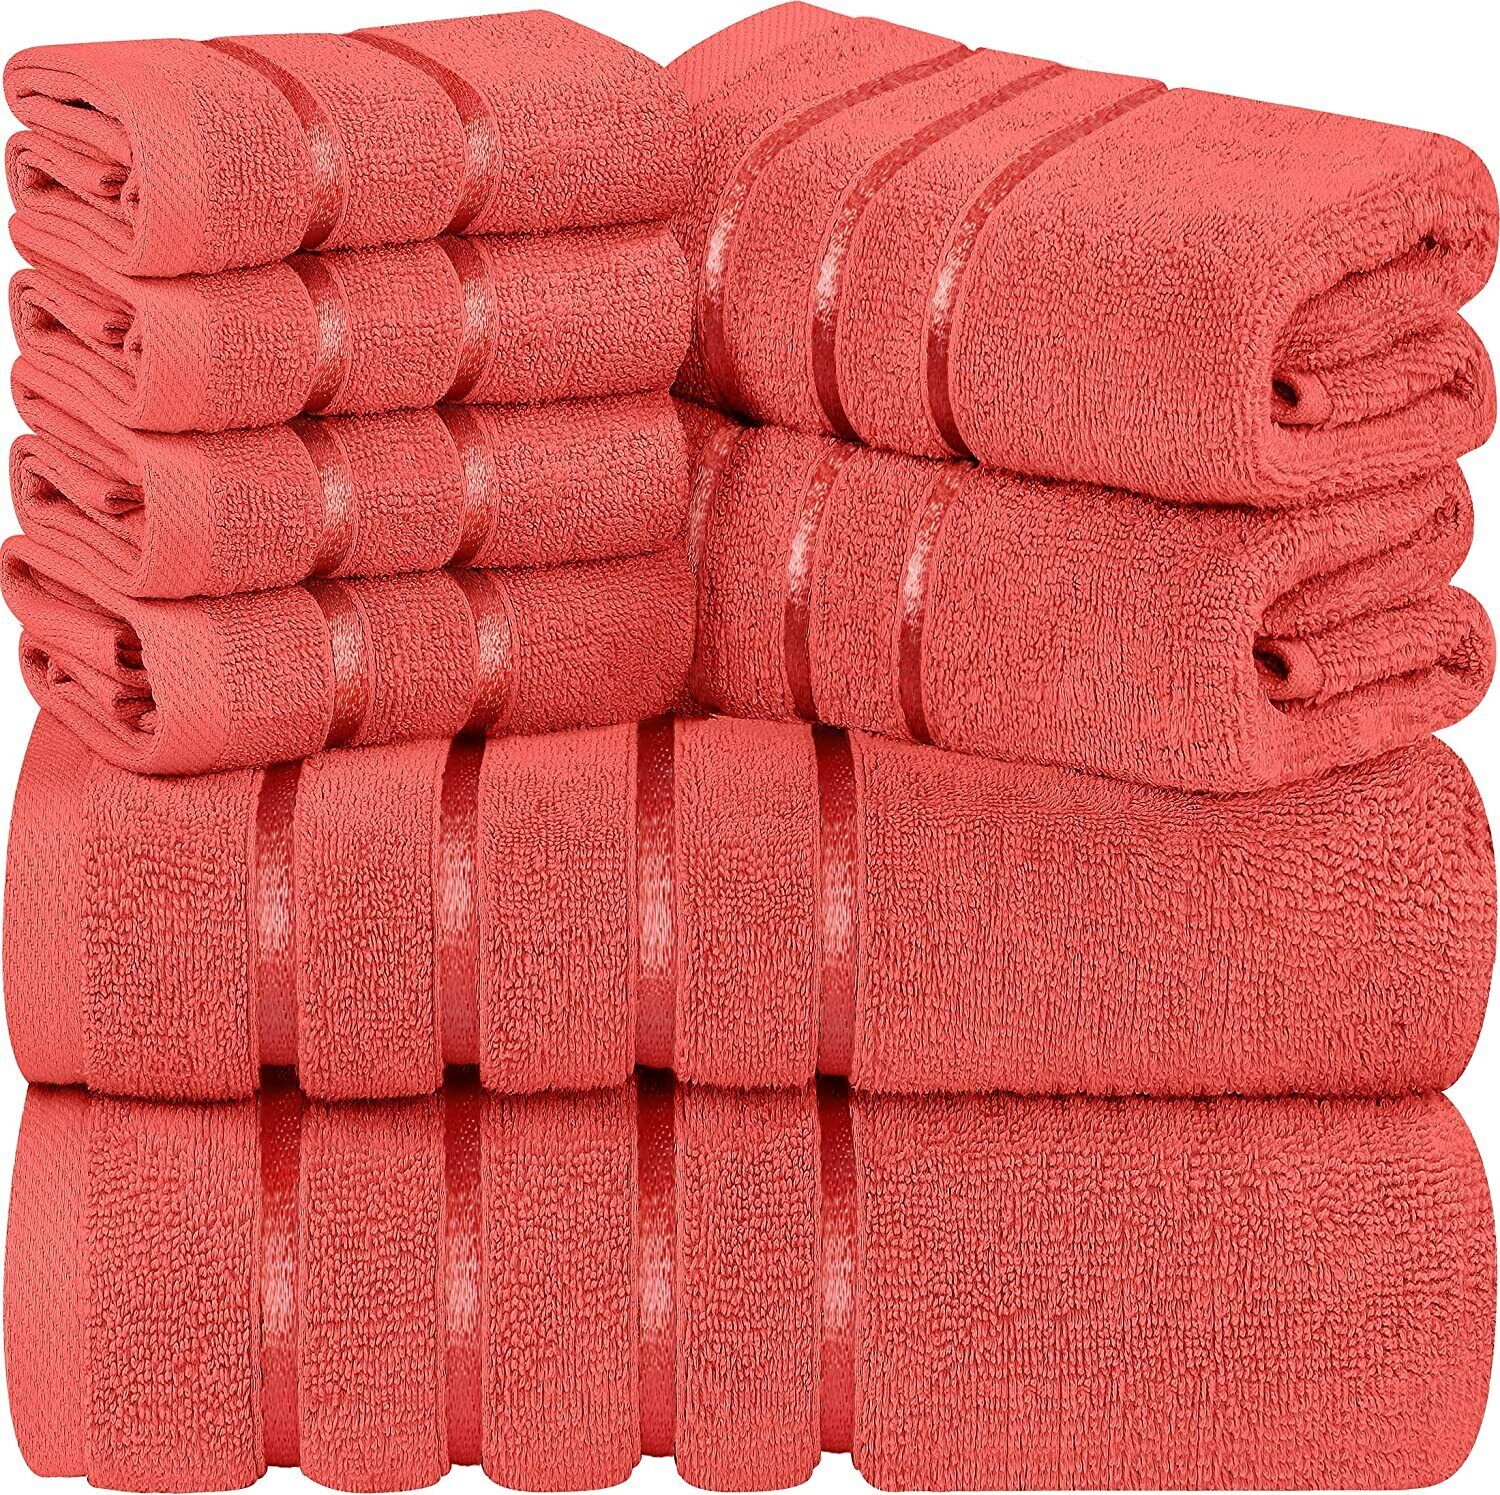 Kitcheniva Ultra Super Soft 100% Cotton Bath Towels Gray 2 Packs